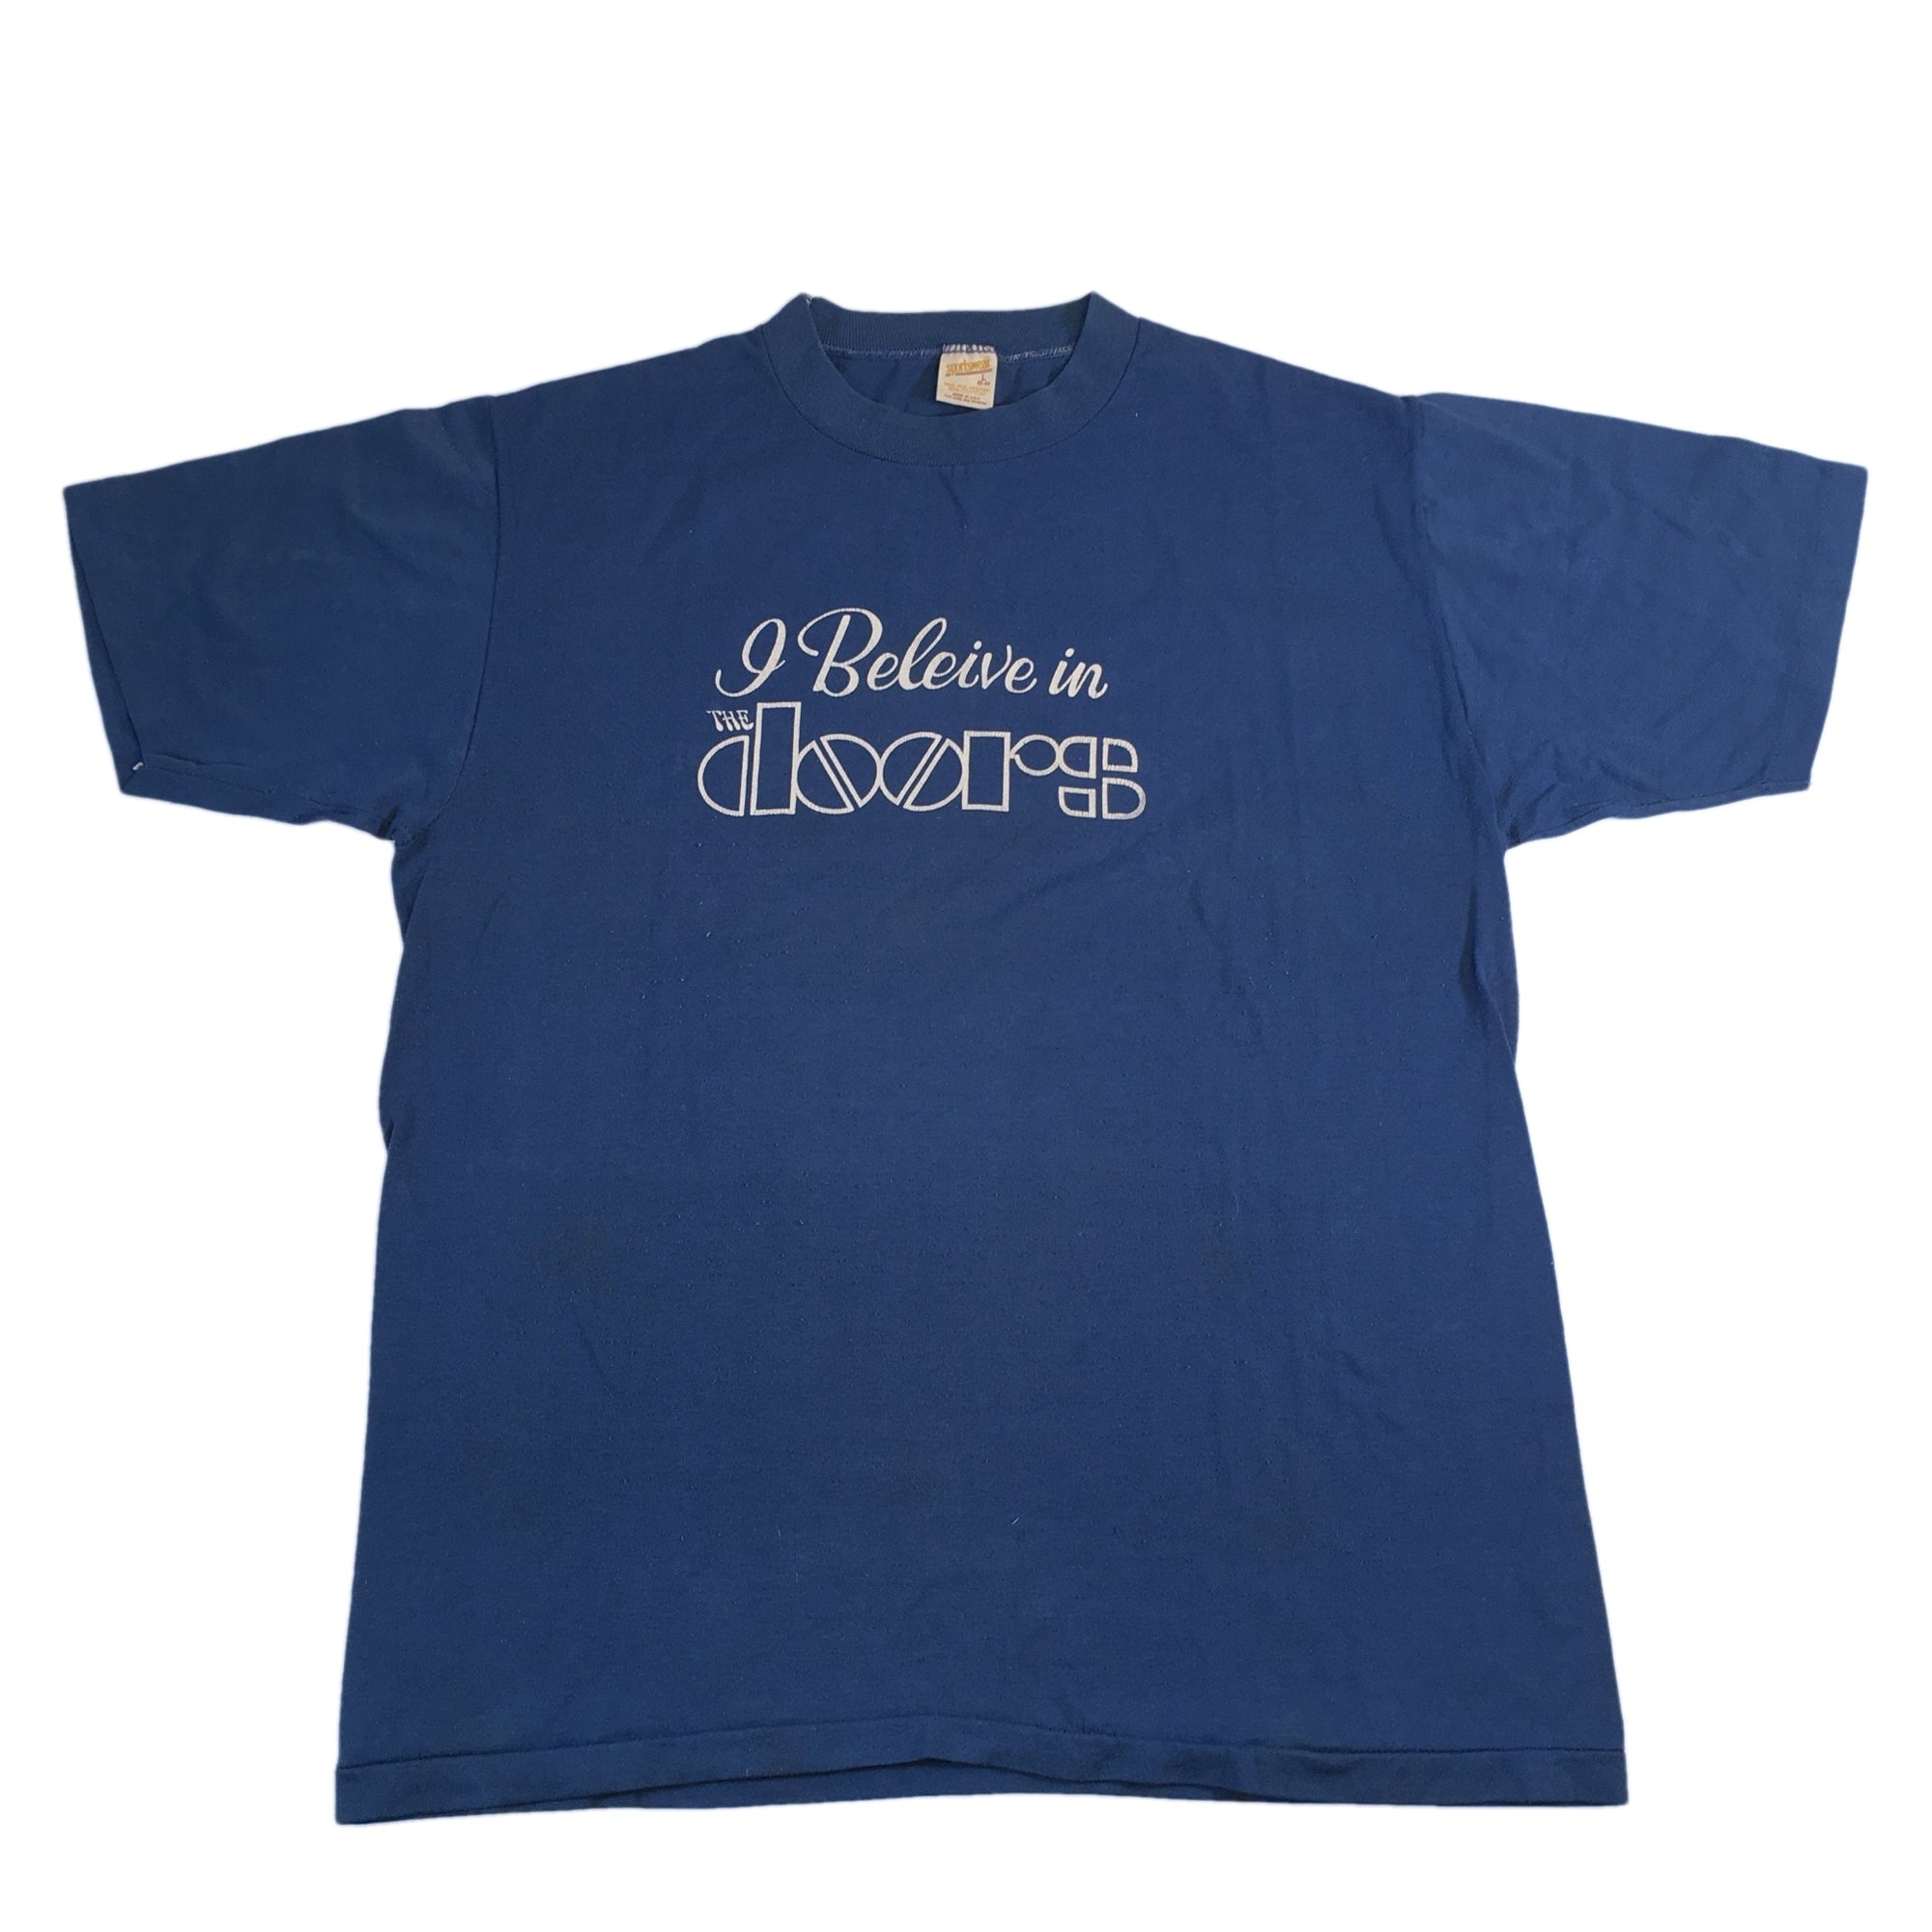 Vintage The Doors "I Believe" T-Shirt - jointcustodydc